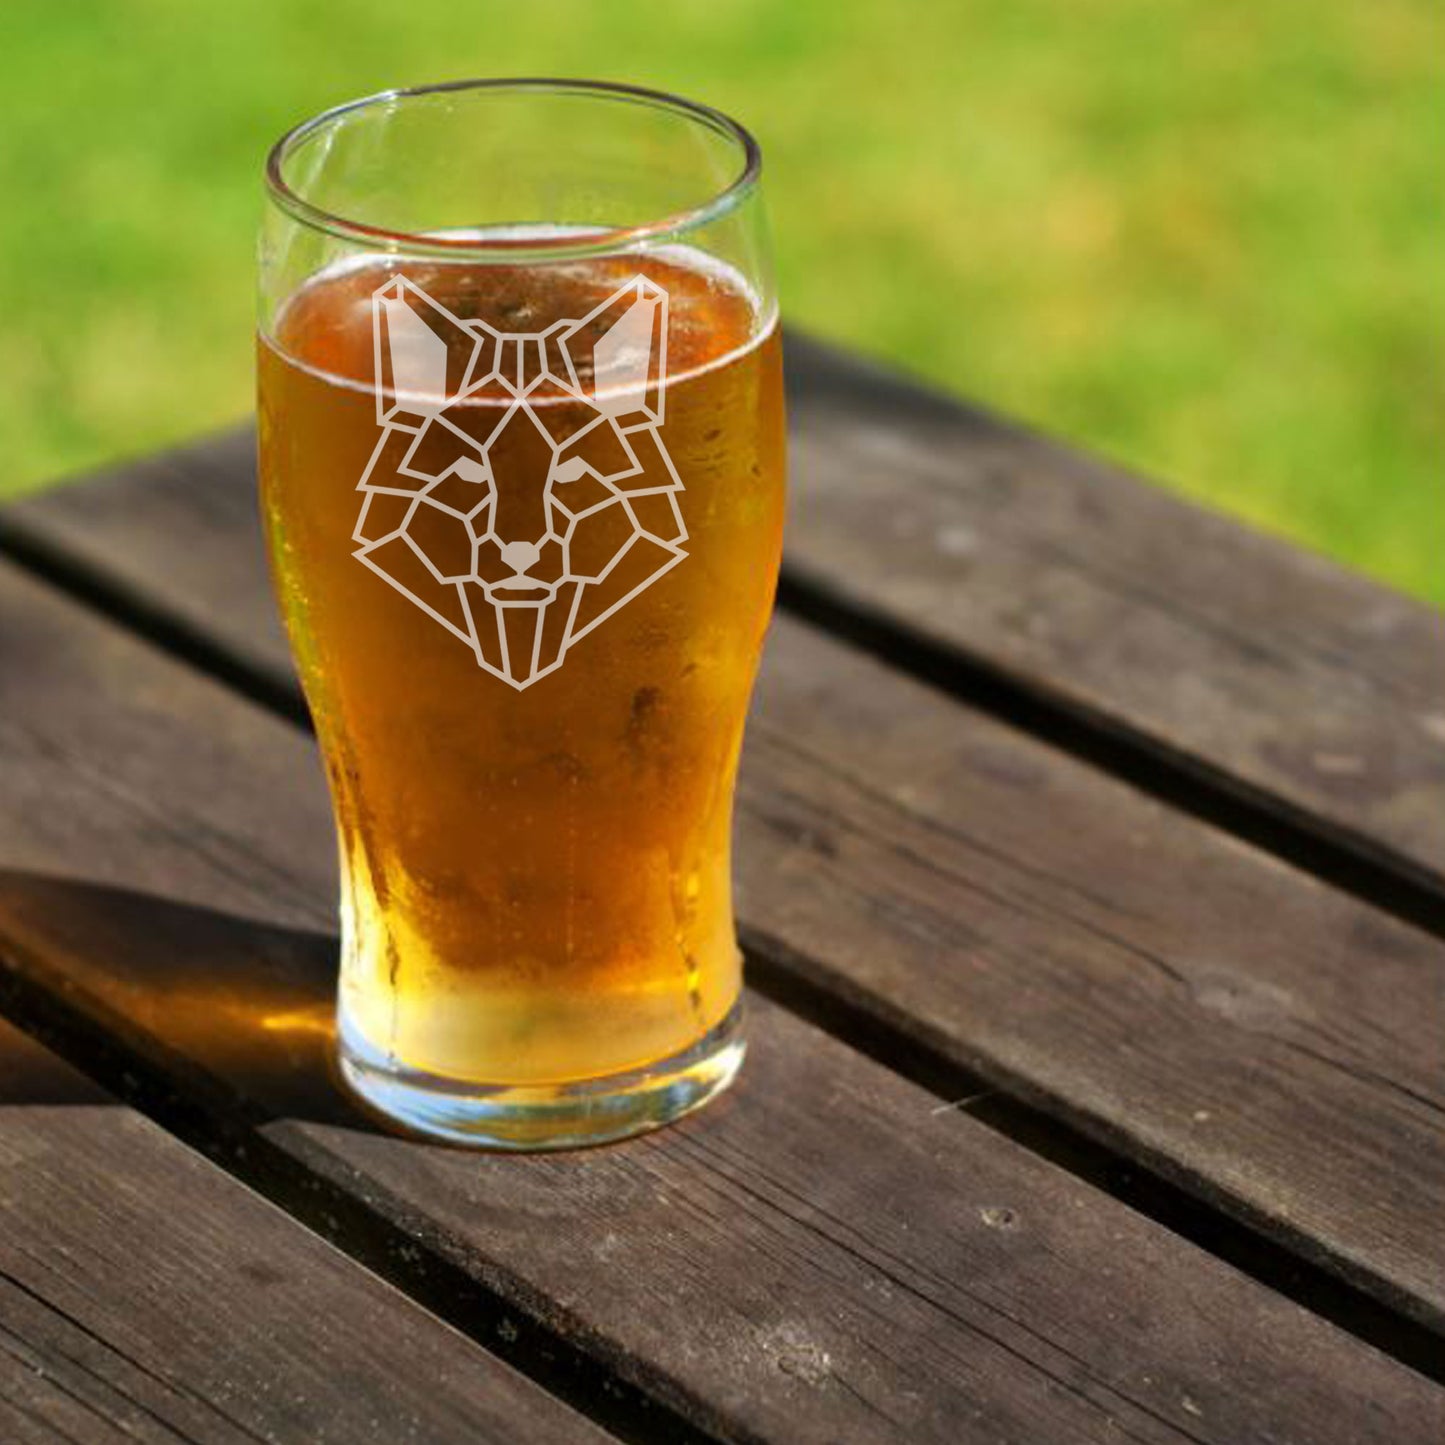 Fox Engraved Beer Pint Glass  - Always Looking Good -   